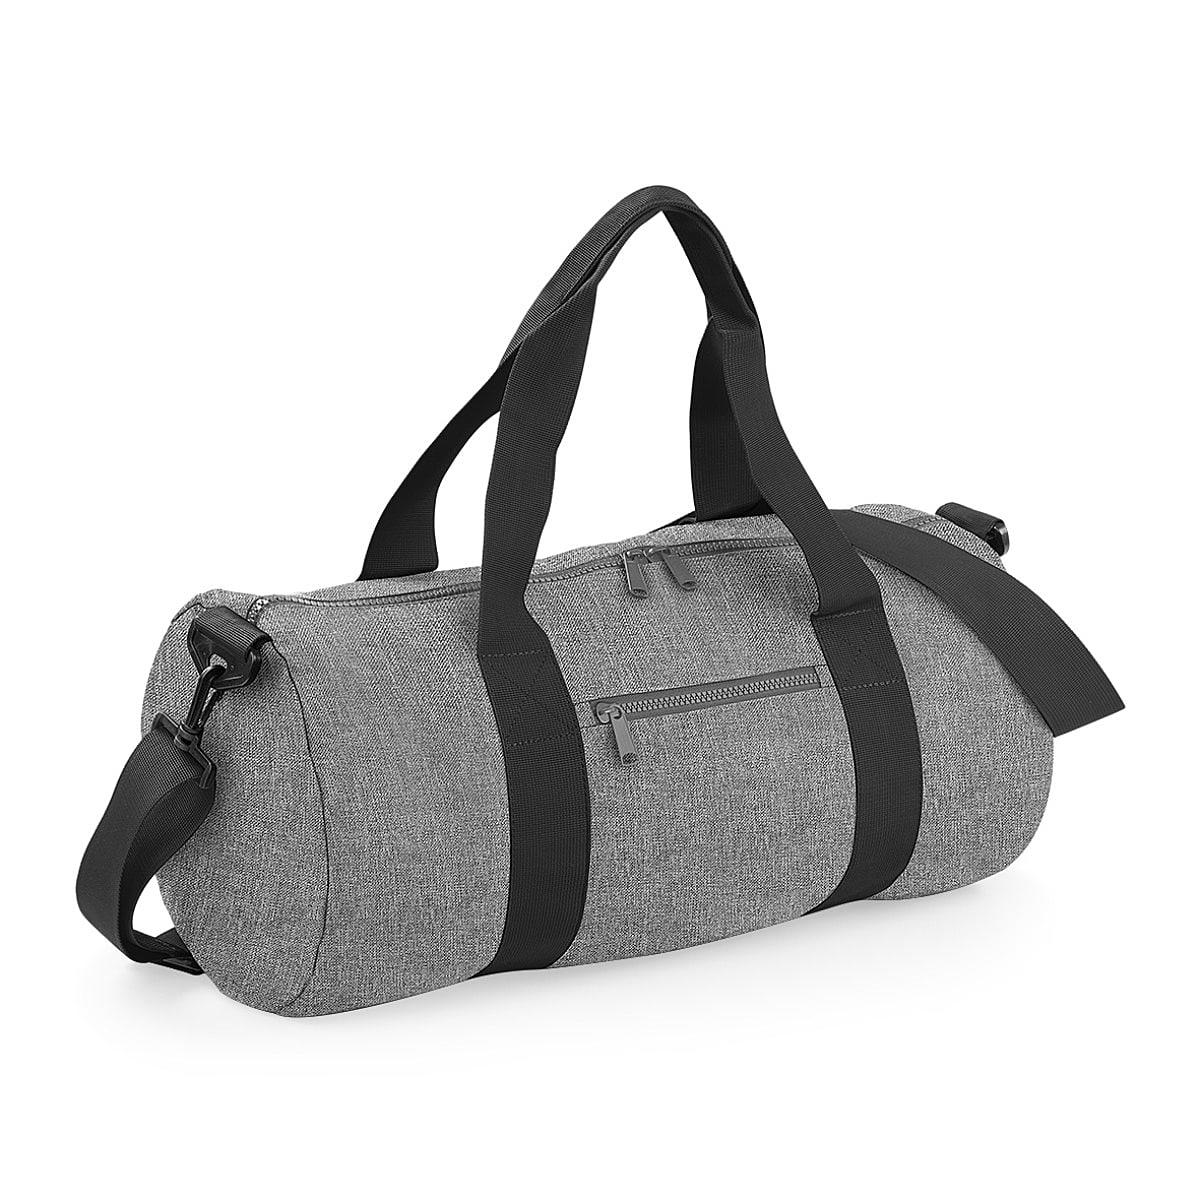 Bagbase Original Barrel Bag in Grey Marl / Black (Product Code: BG140)